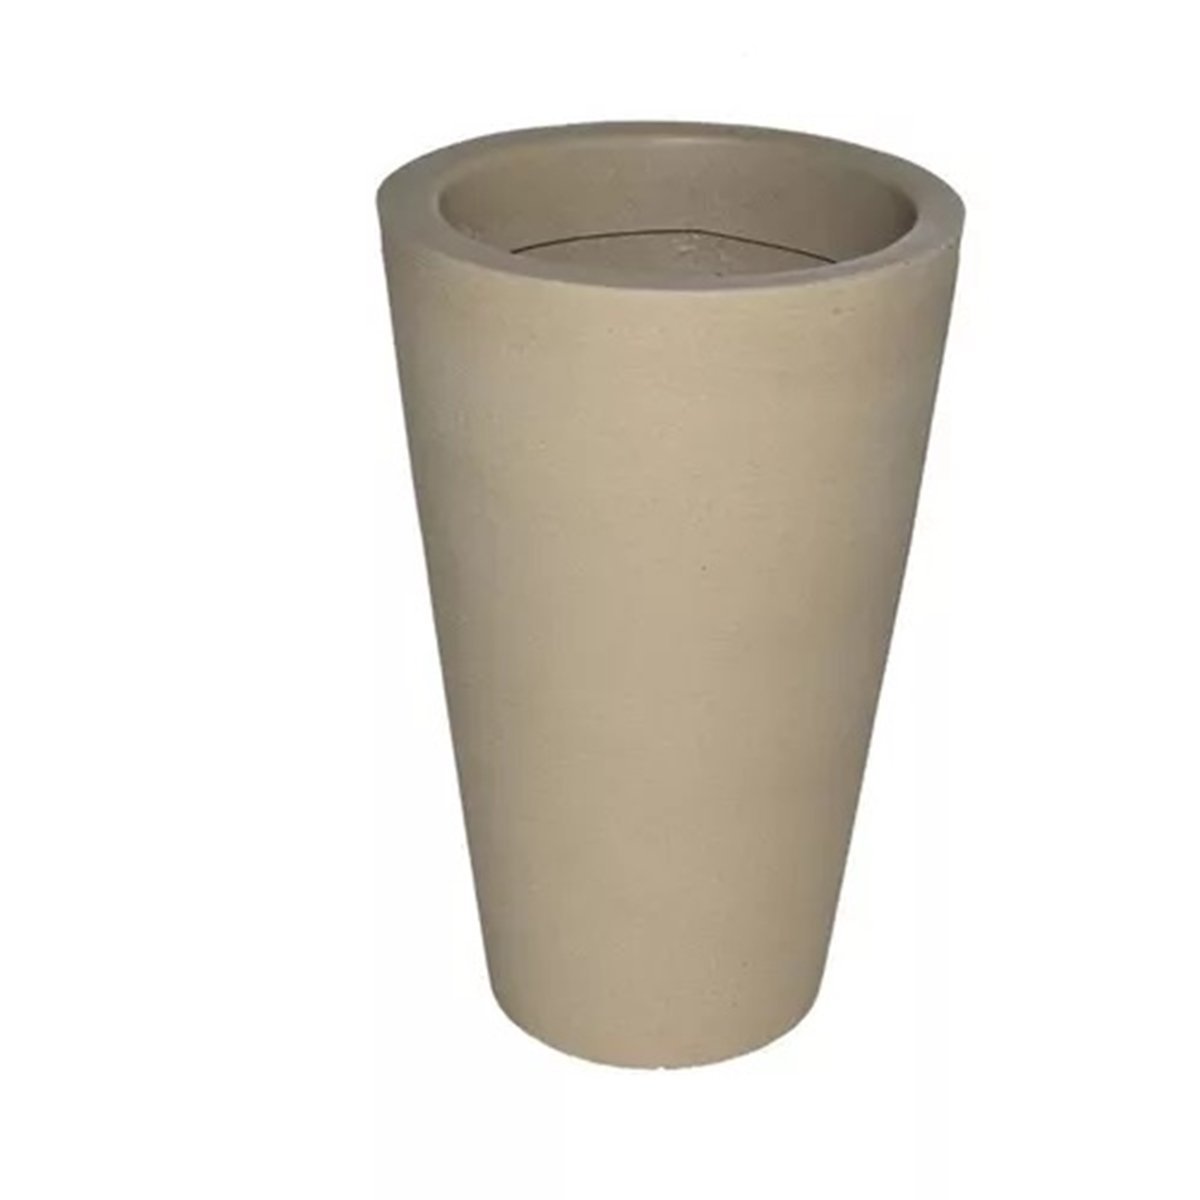 Vaso Decorativo para Plantas Coluna Redonda Cone Tamanho G:Bege - 1